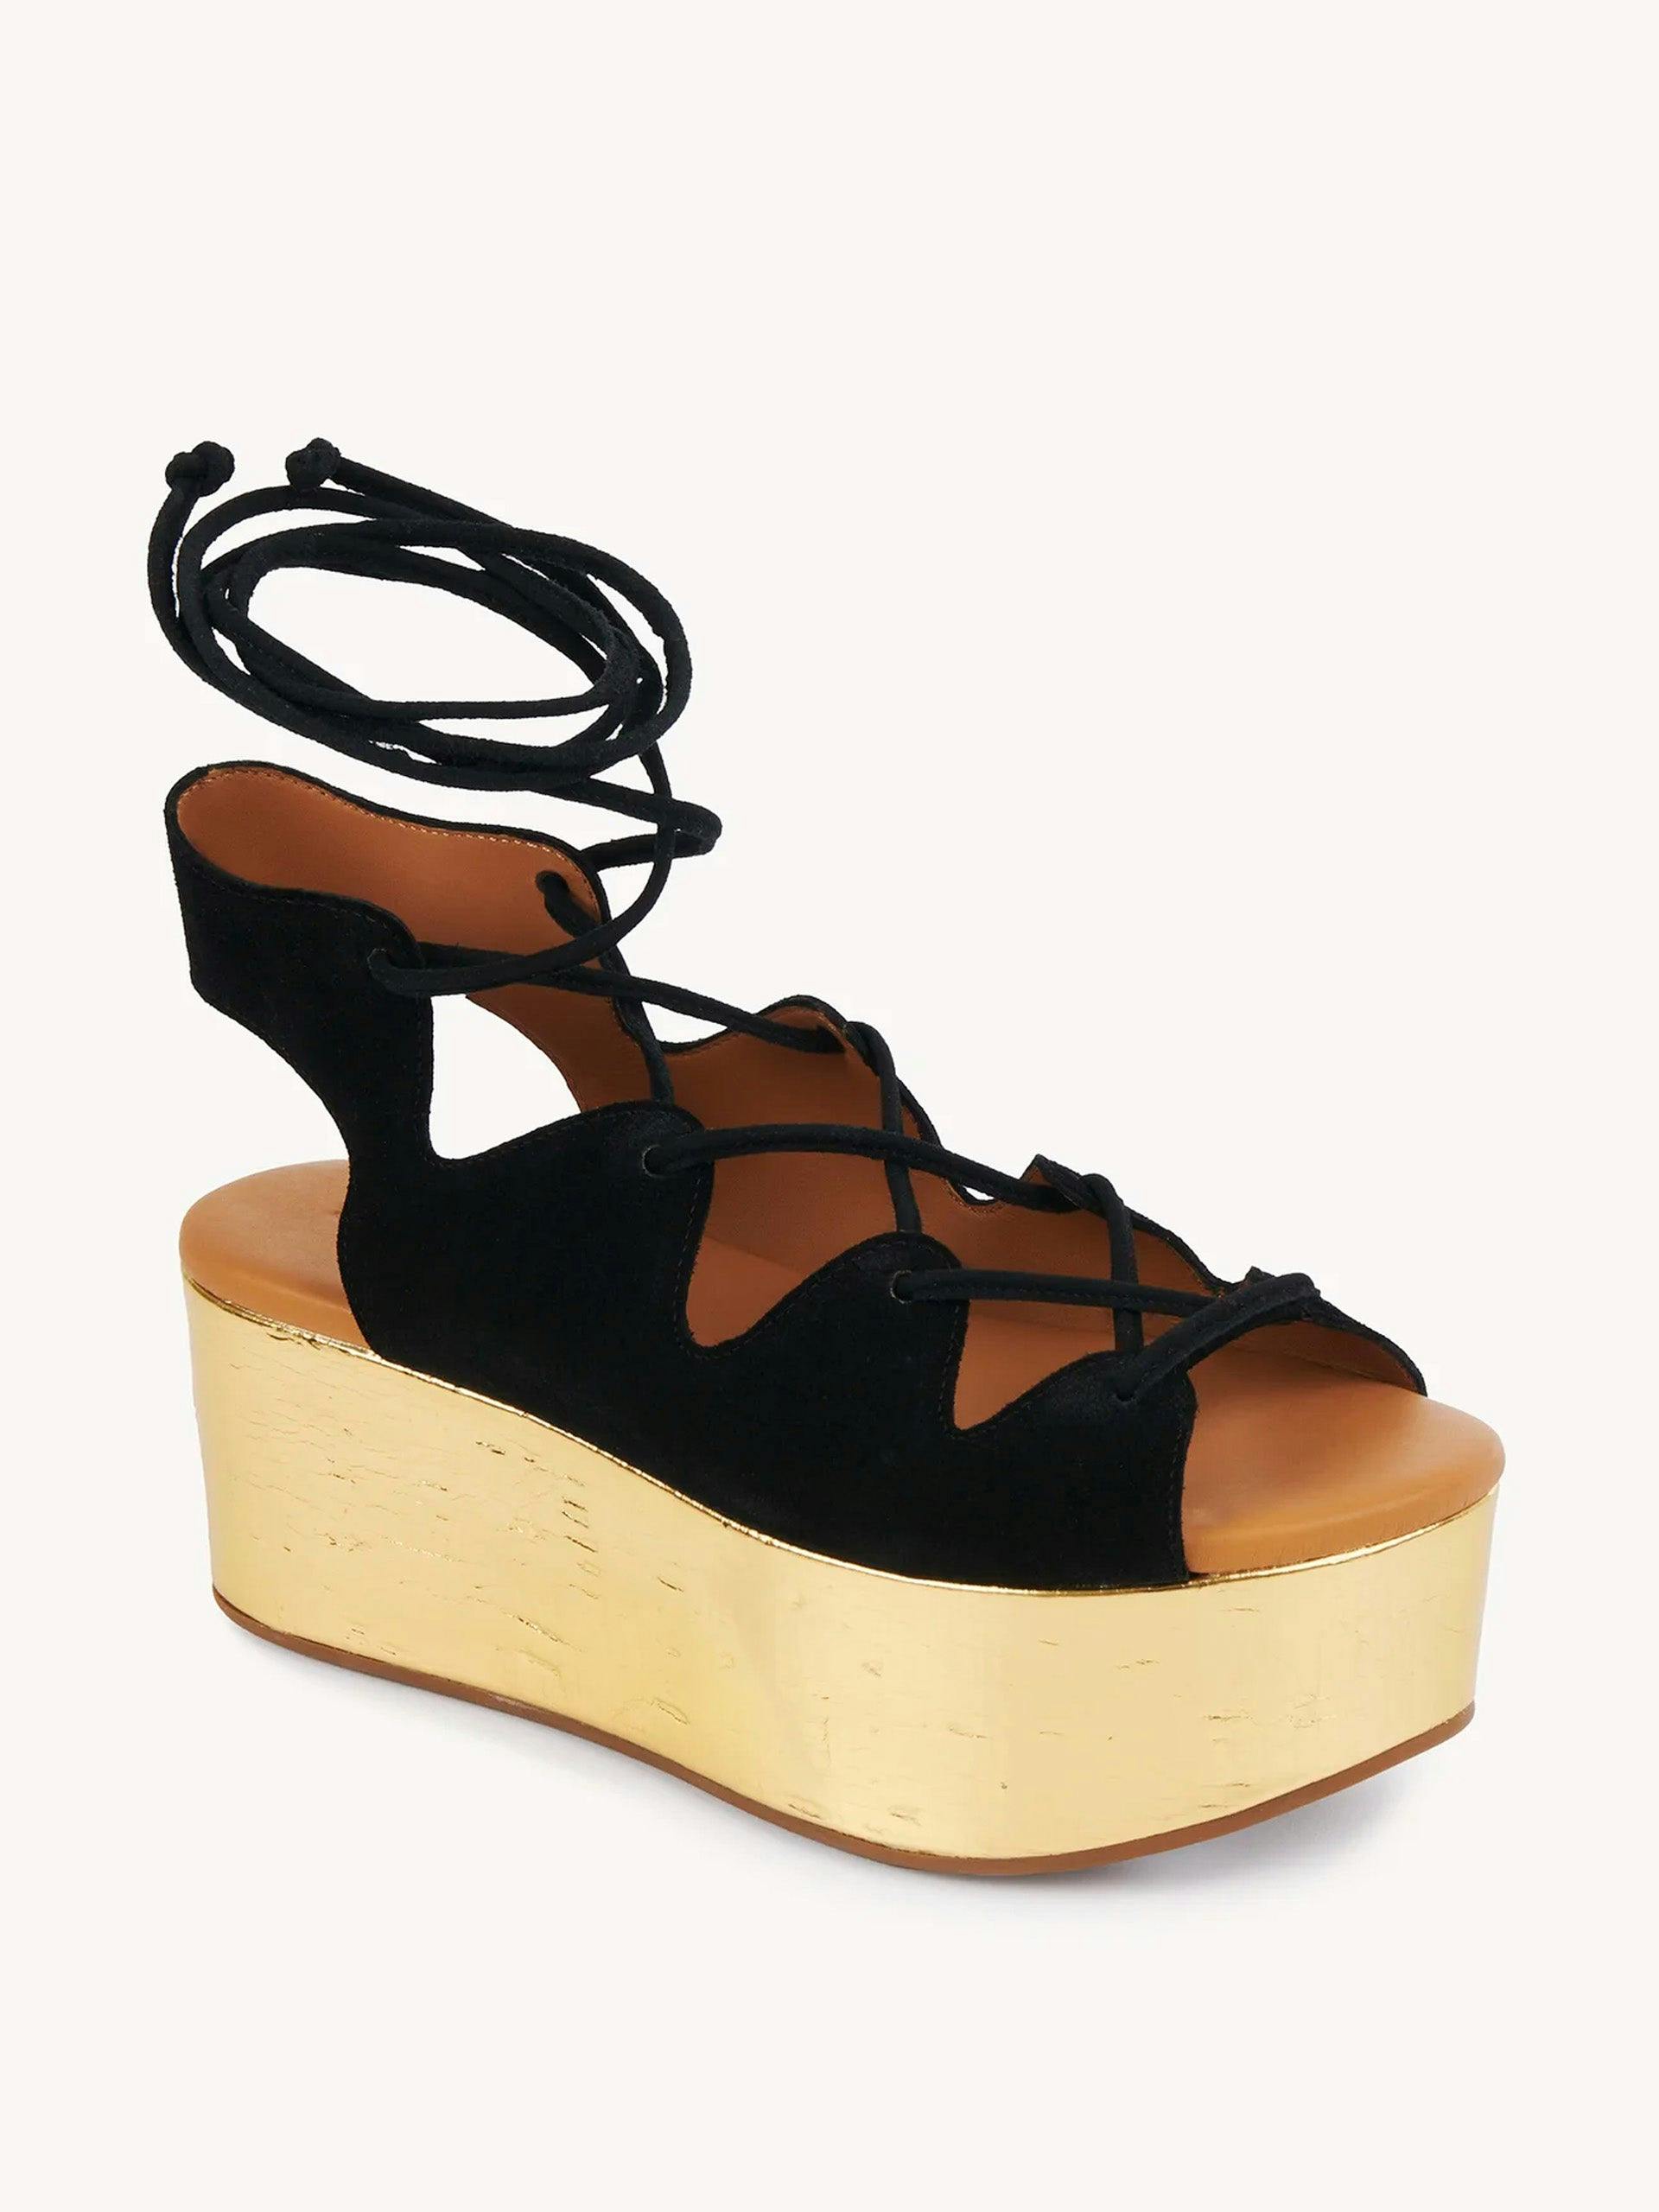 Liana wedge sandals